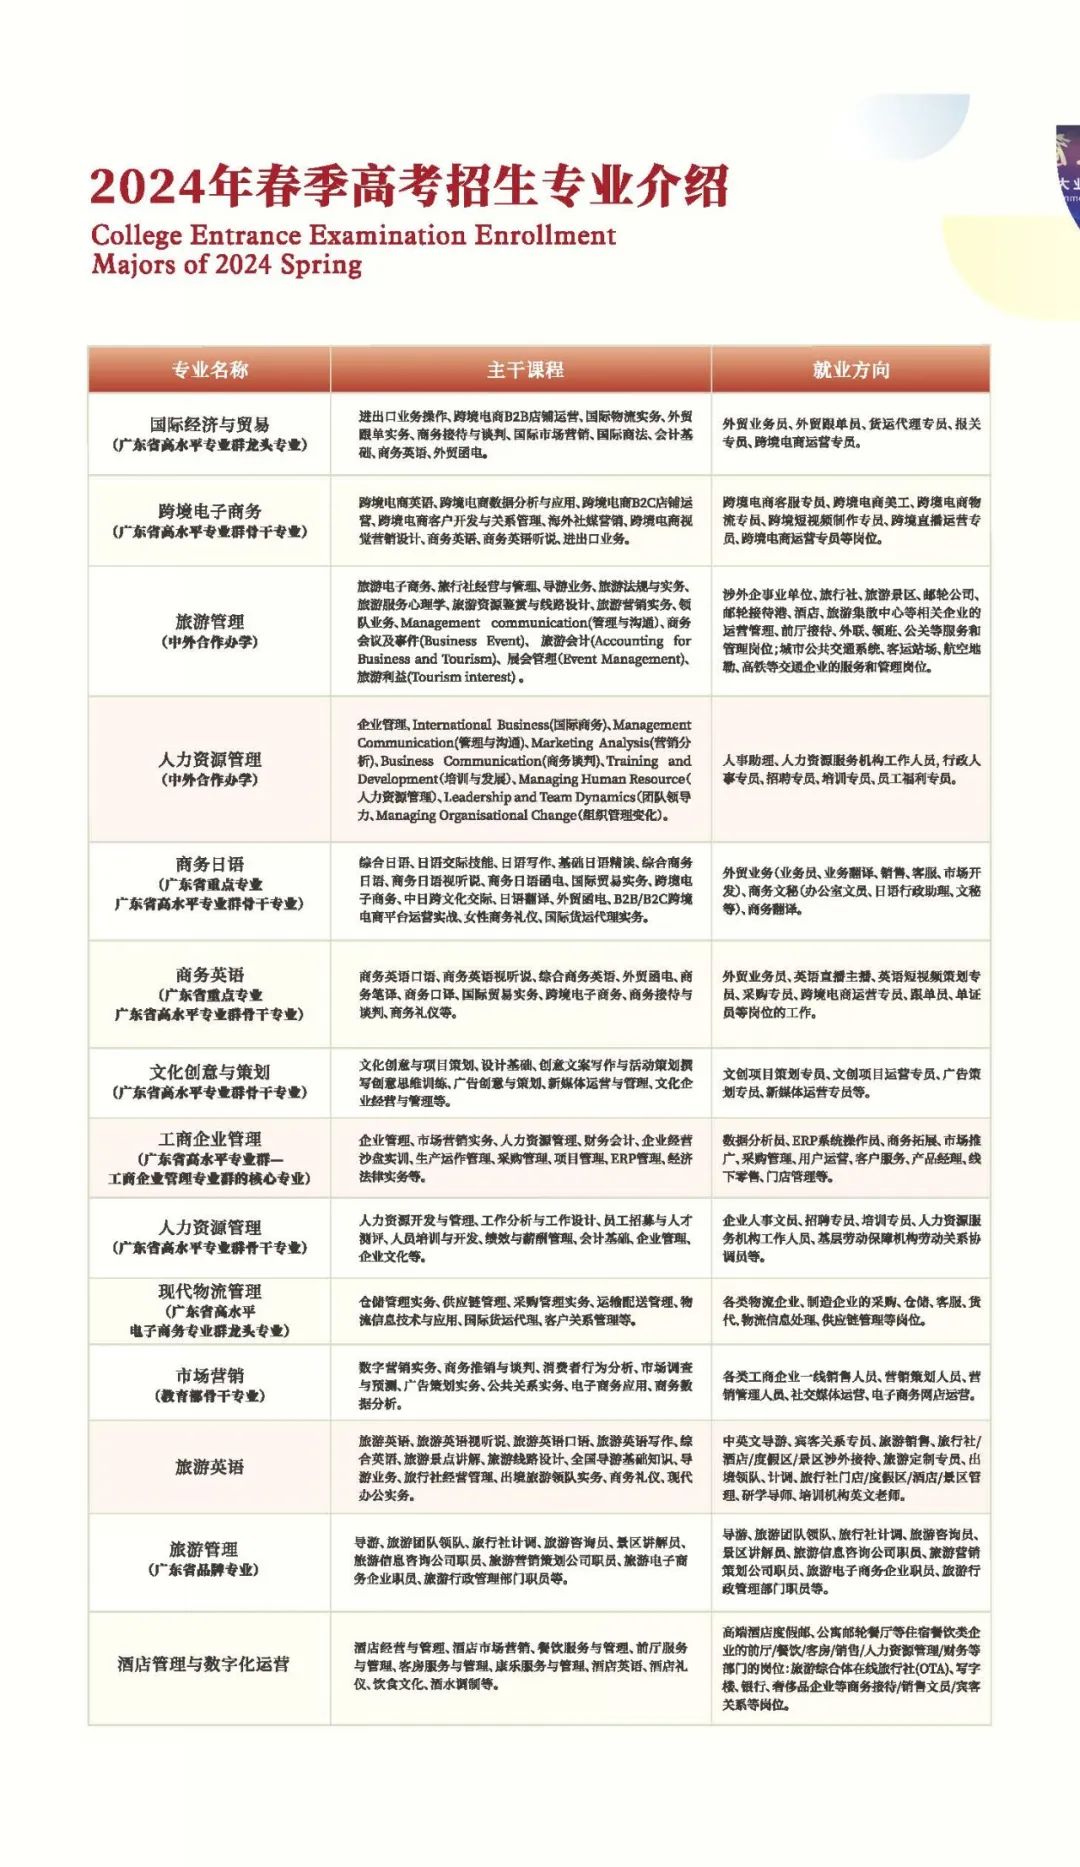 广东女子职业技术学院2024年春季高考招生简章